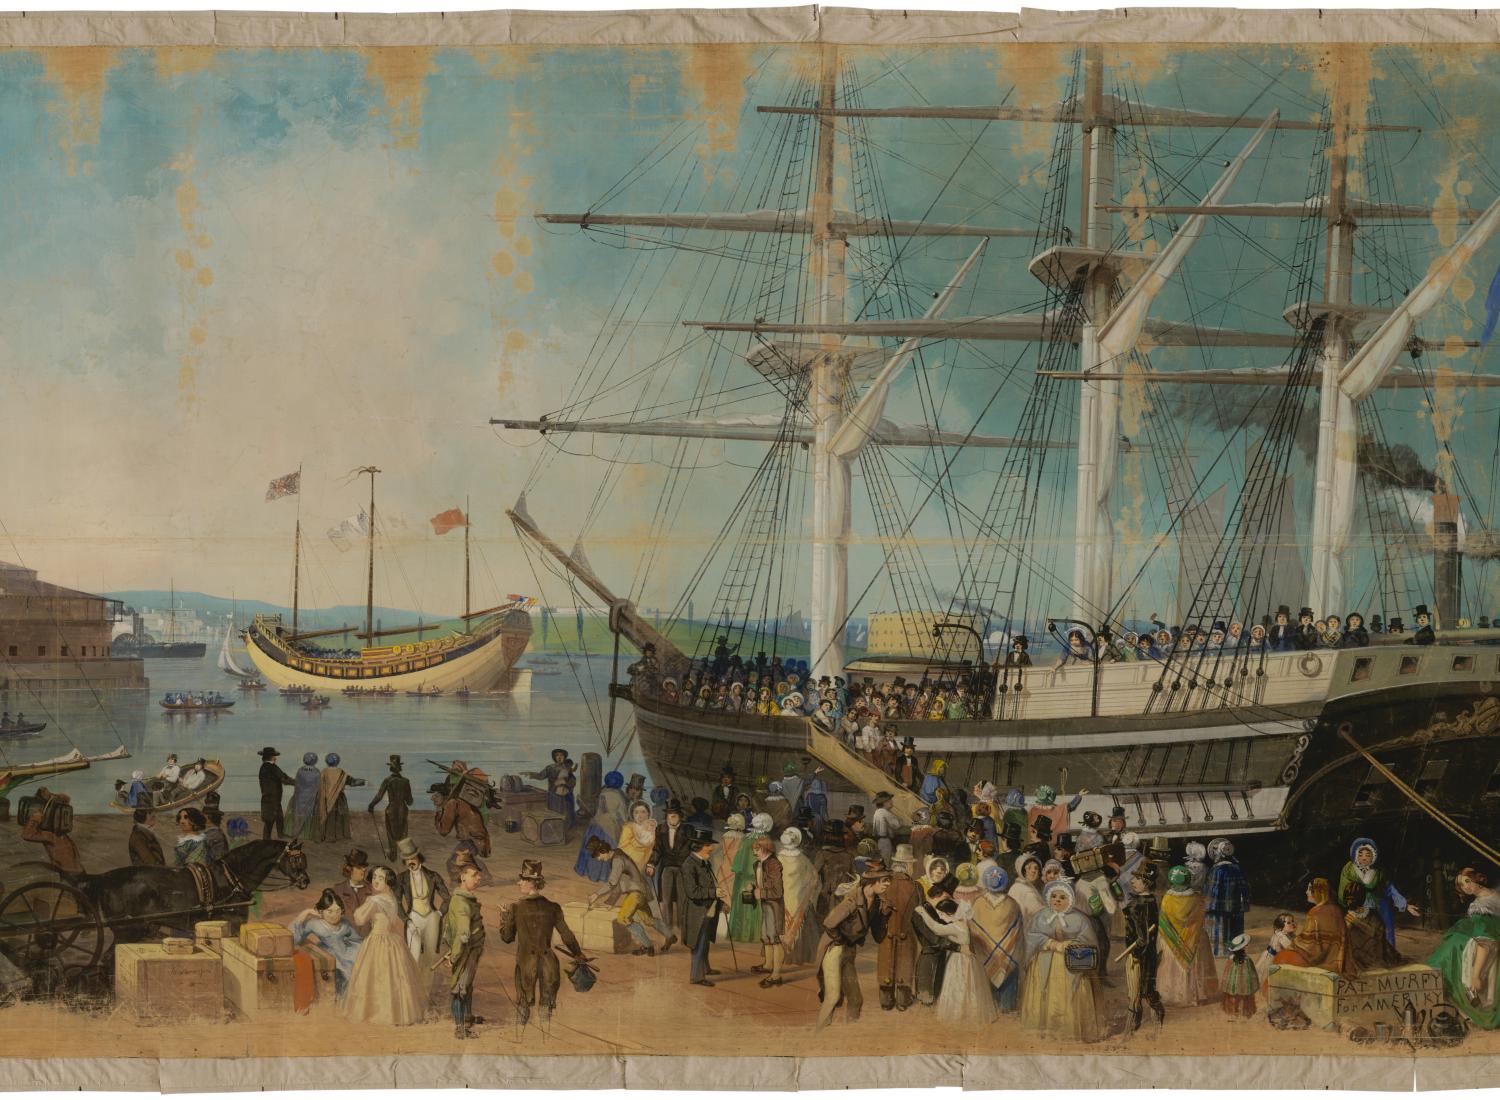 Une peinture du XIXe siècle représentant un port avec de nombreuses personnes dans la rue à côté d'un grand navire.